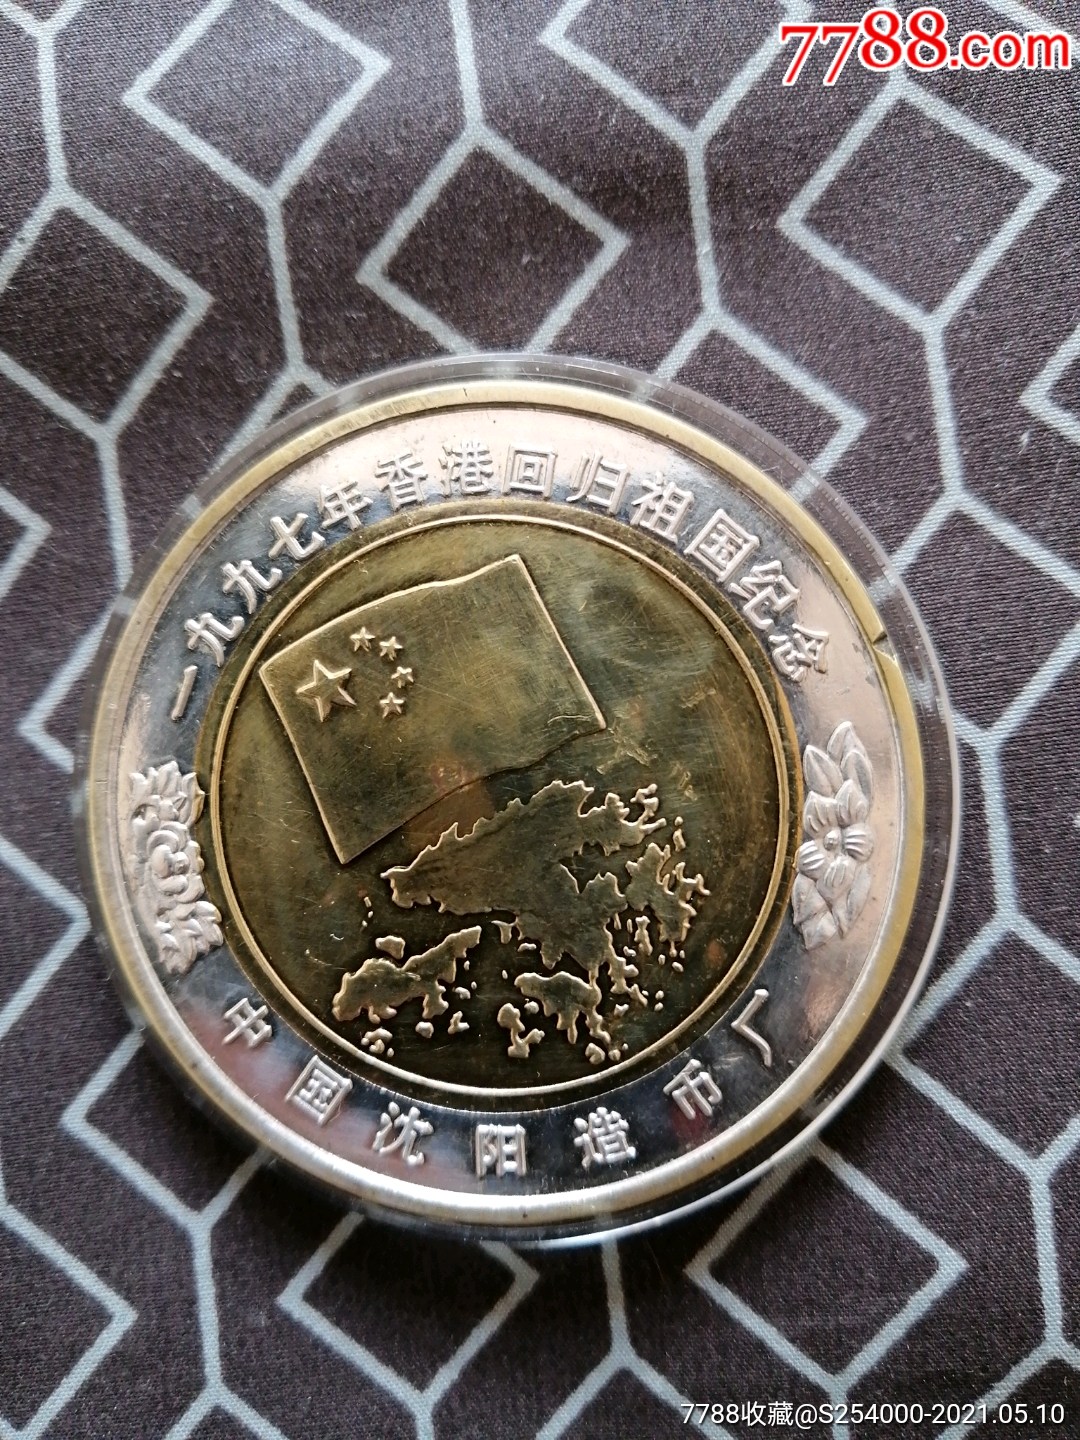 一九九七年香港回归祖国纪念币,沈阳造币厂